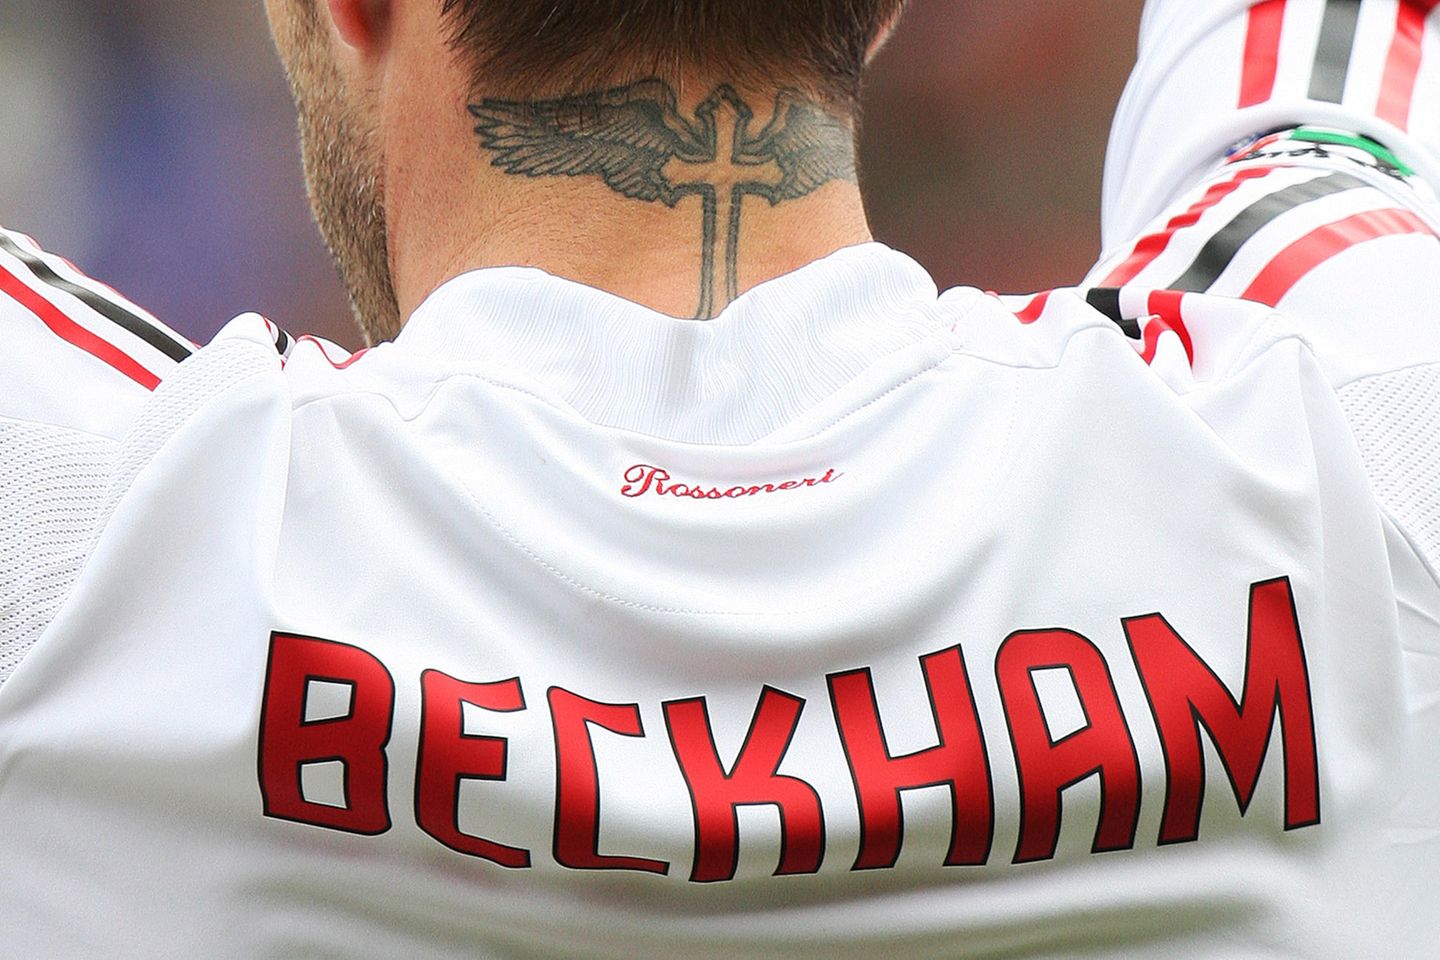 Bereits 2004 trägt David Beckham das Tattoo mit dem gotischen Kreuz und den damit verbundenen Flügeln. Das religiöse Symbol soll einen besonderen Schutzcharakter haben.